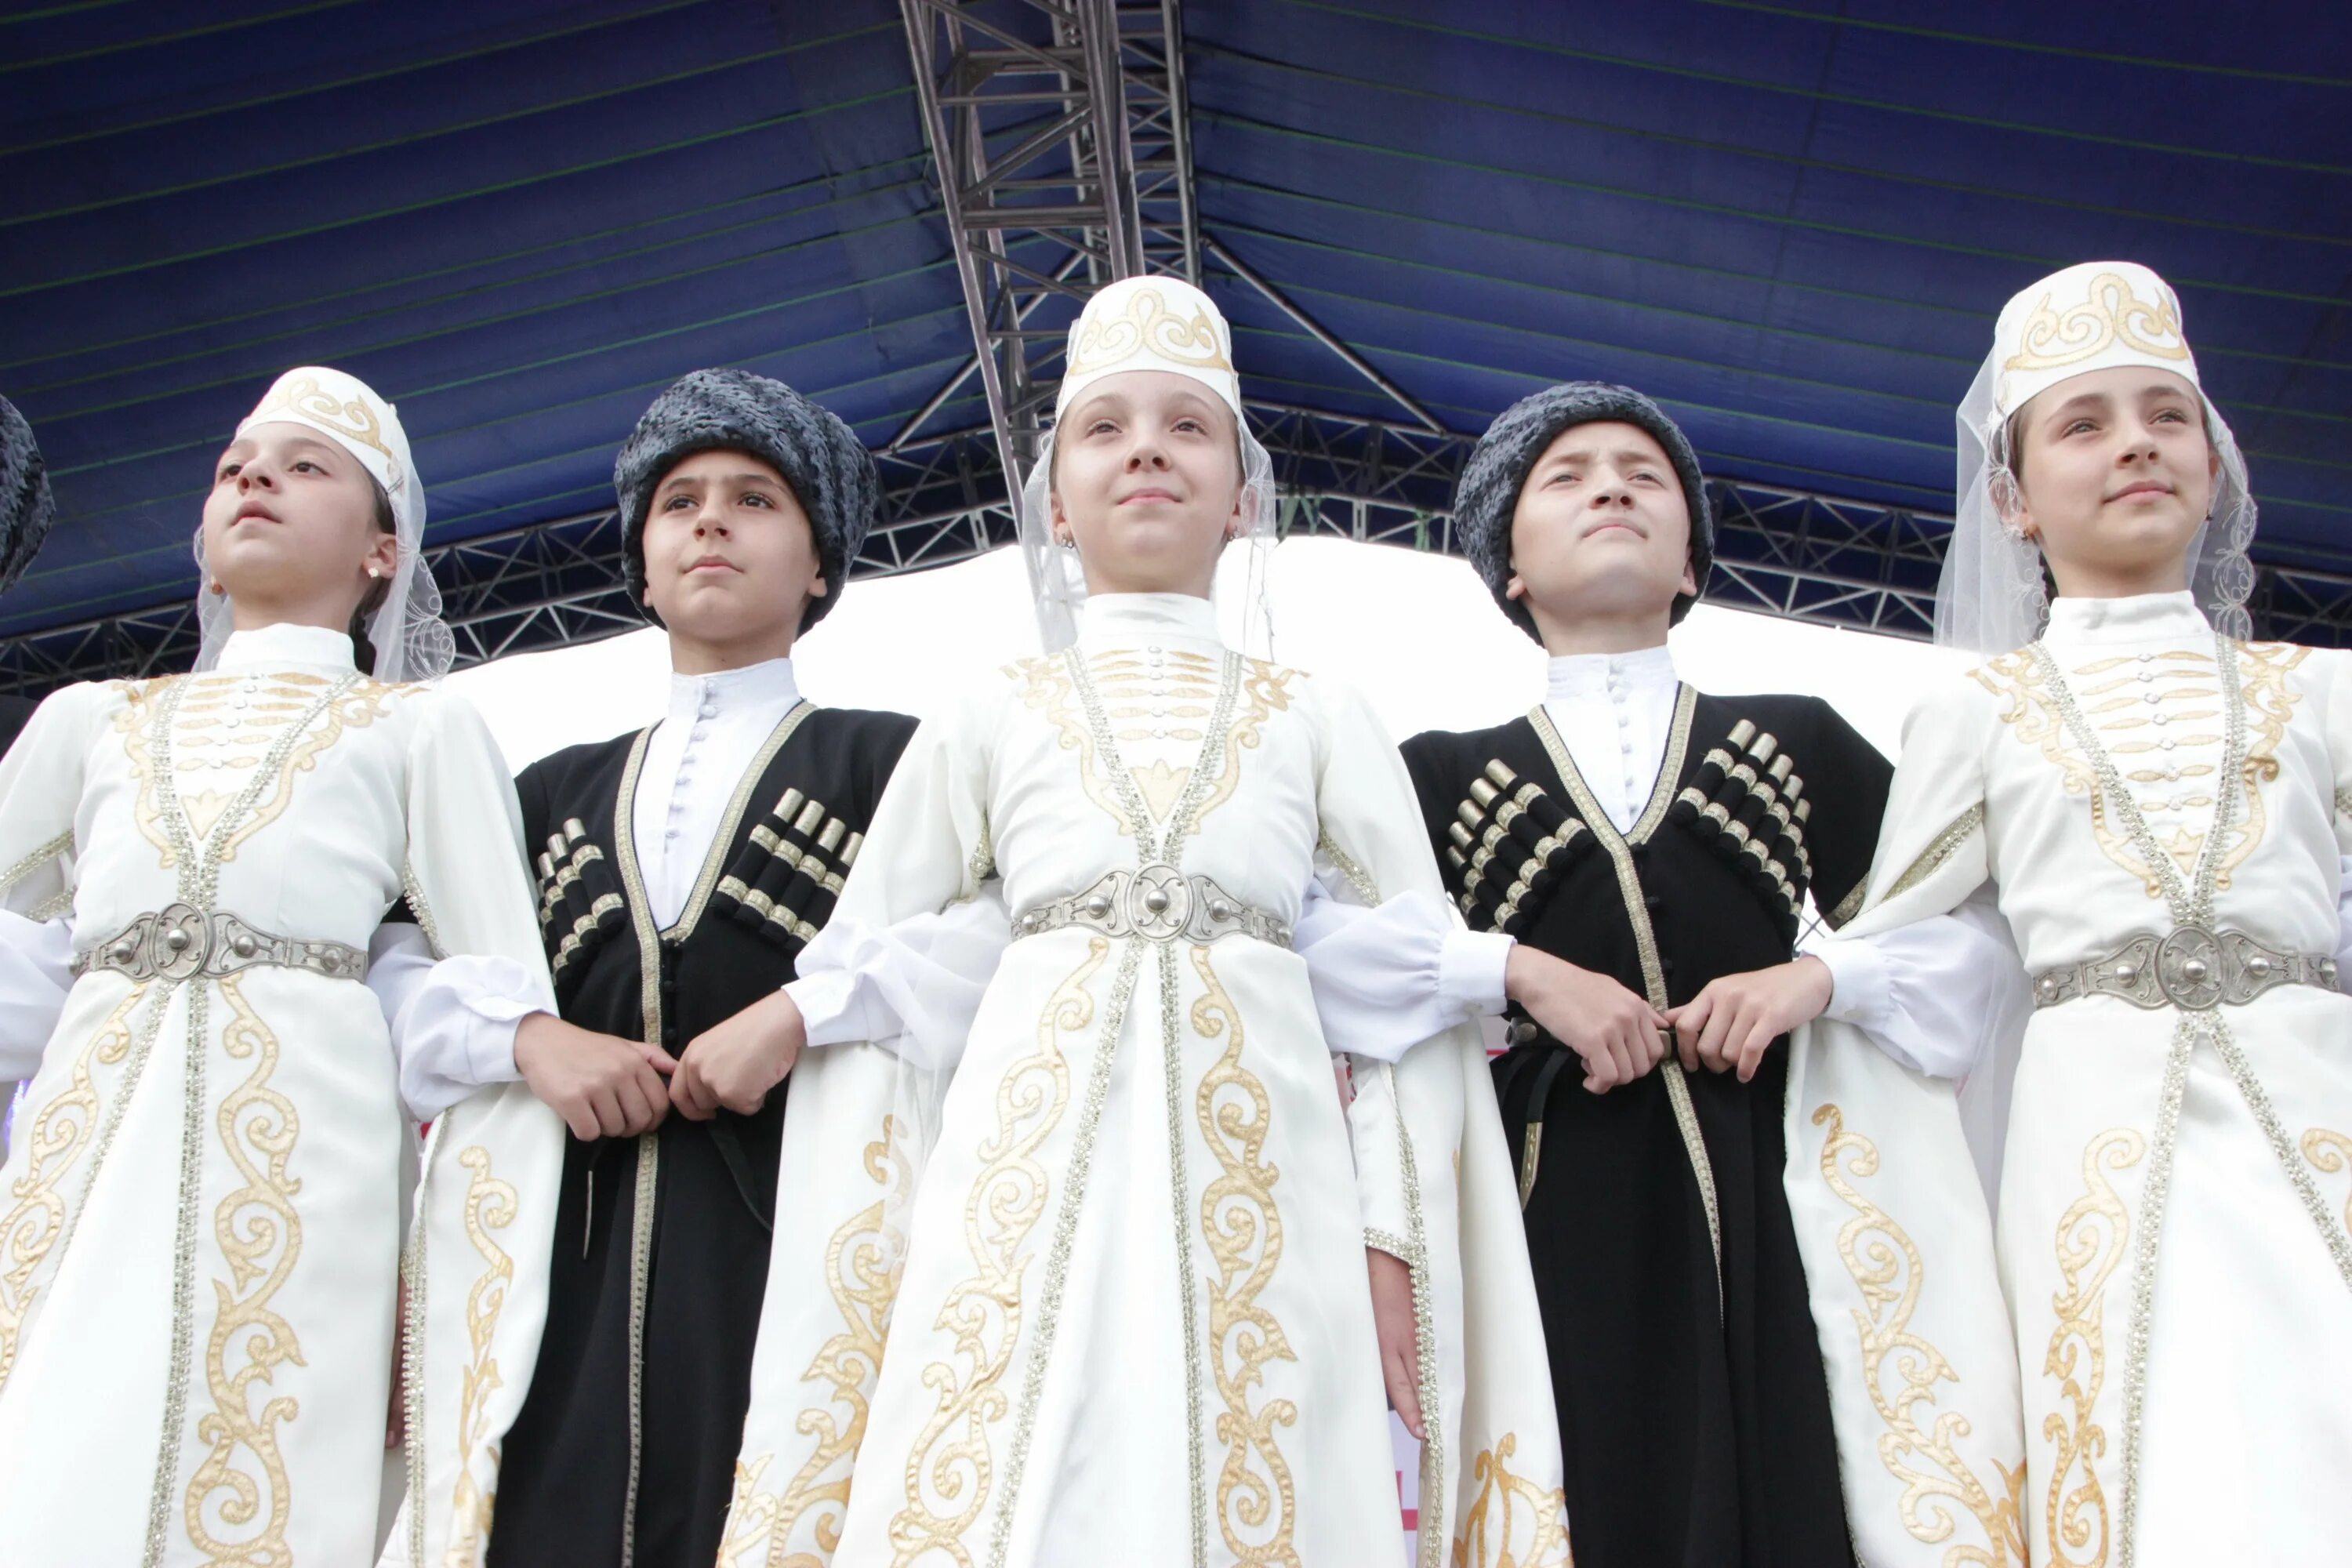 Северная Осетия национальный костюм. Нац костюм Северной Осетии. Северная Осетия Алания национальный костюм. Осетины осетины национальный костюм.